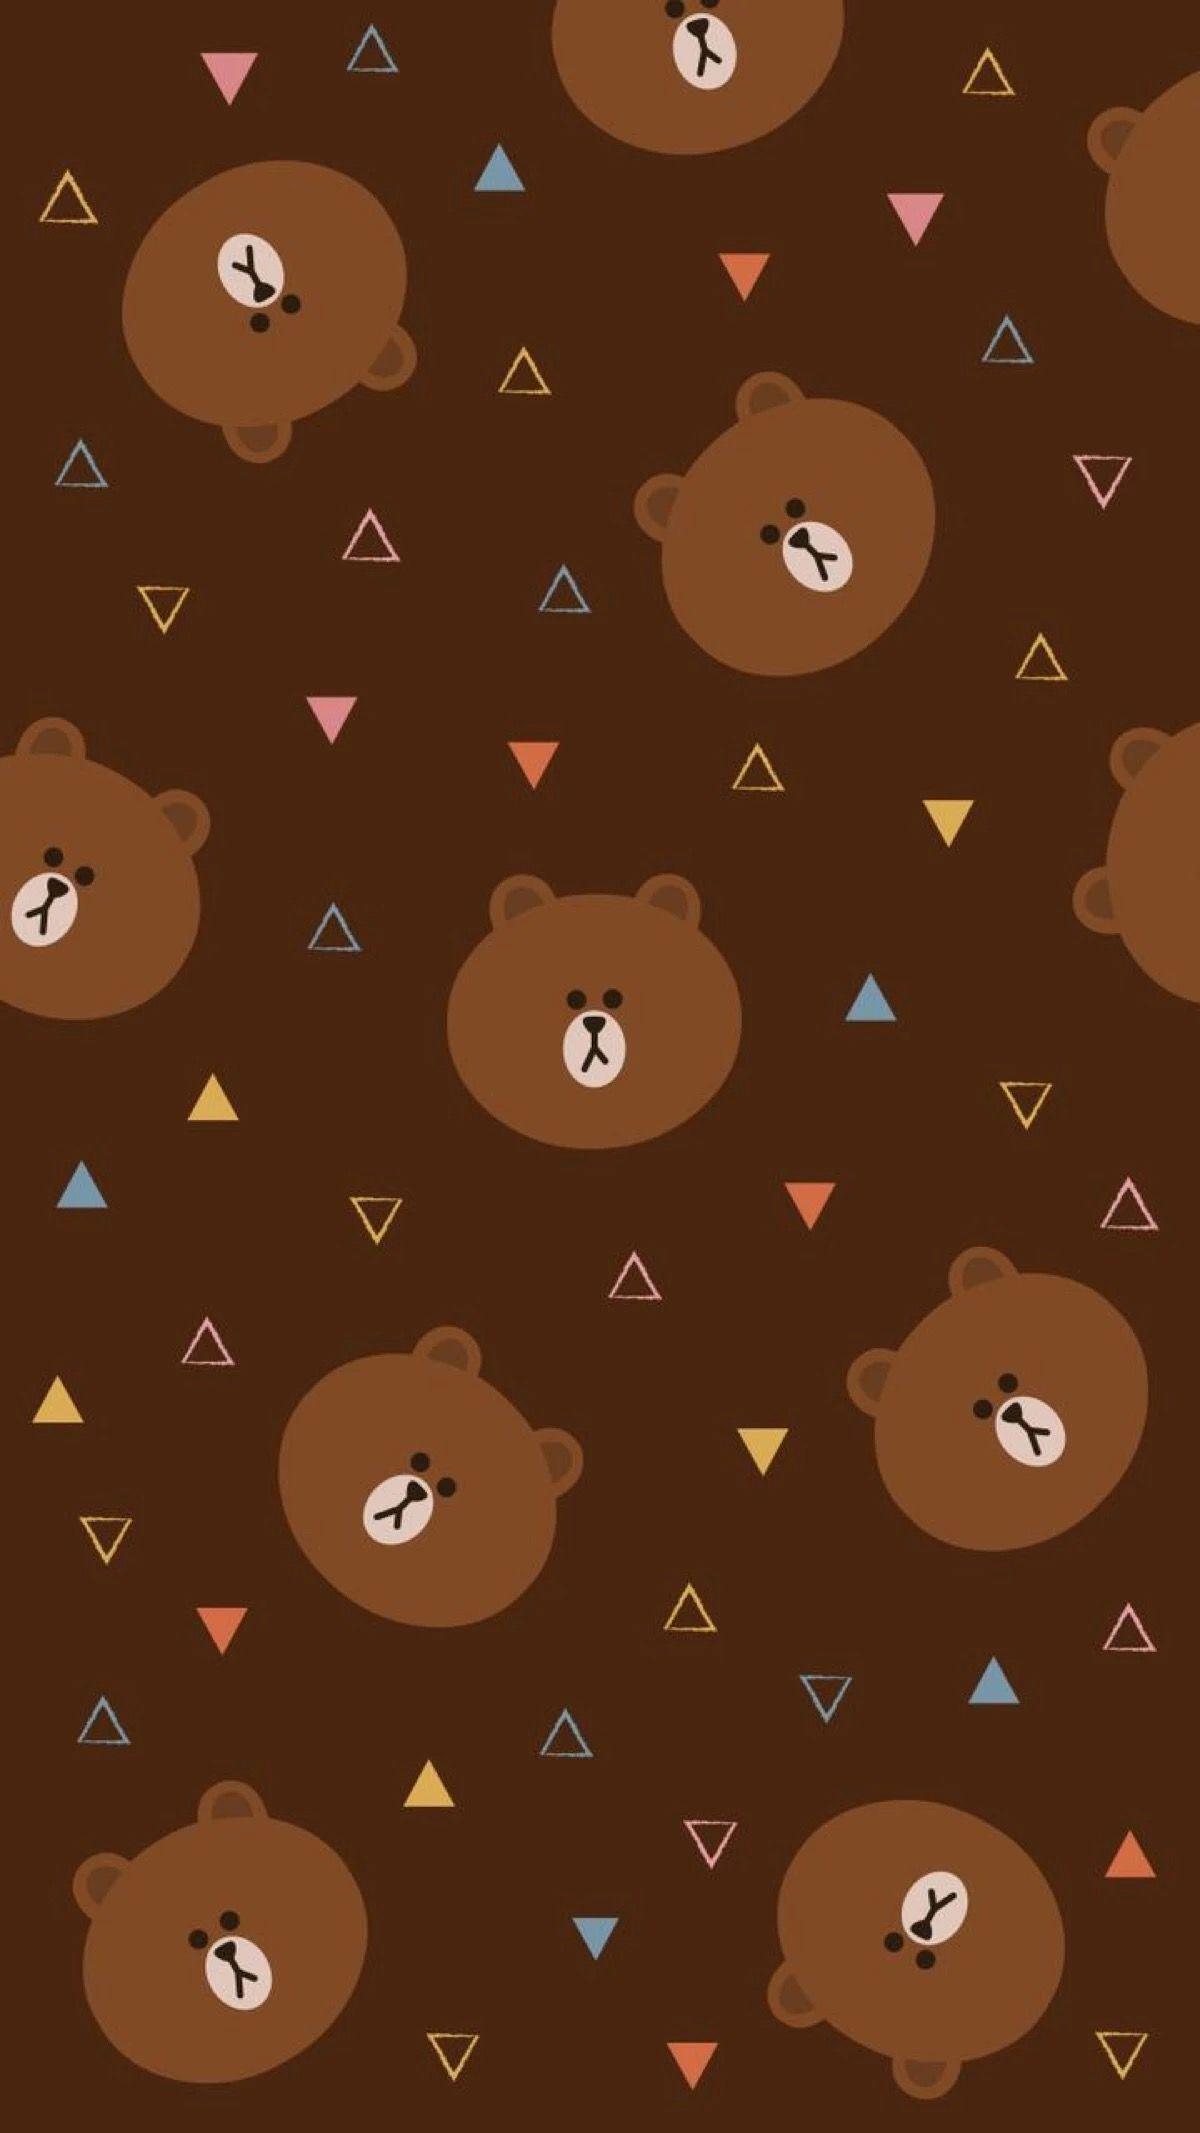 Khám phá hình nền gấu brown đầy màu sắc! Sự kết hợp giữa nét đặc trưng của loài gấu và phong cách nghệ thuật tạo nên bức tranh đầy hứng khởi. Hãy thêm một chút sự ấm áp cho màn hình của bạn với hình nền này.